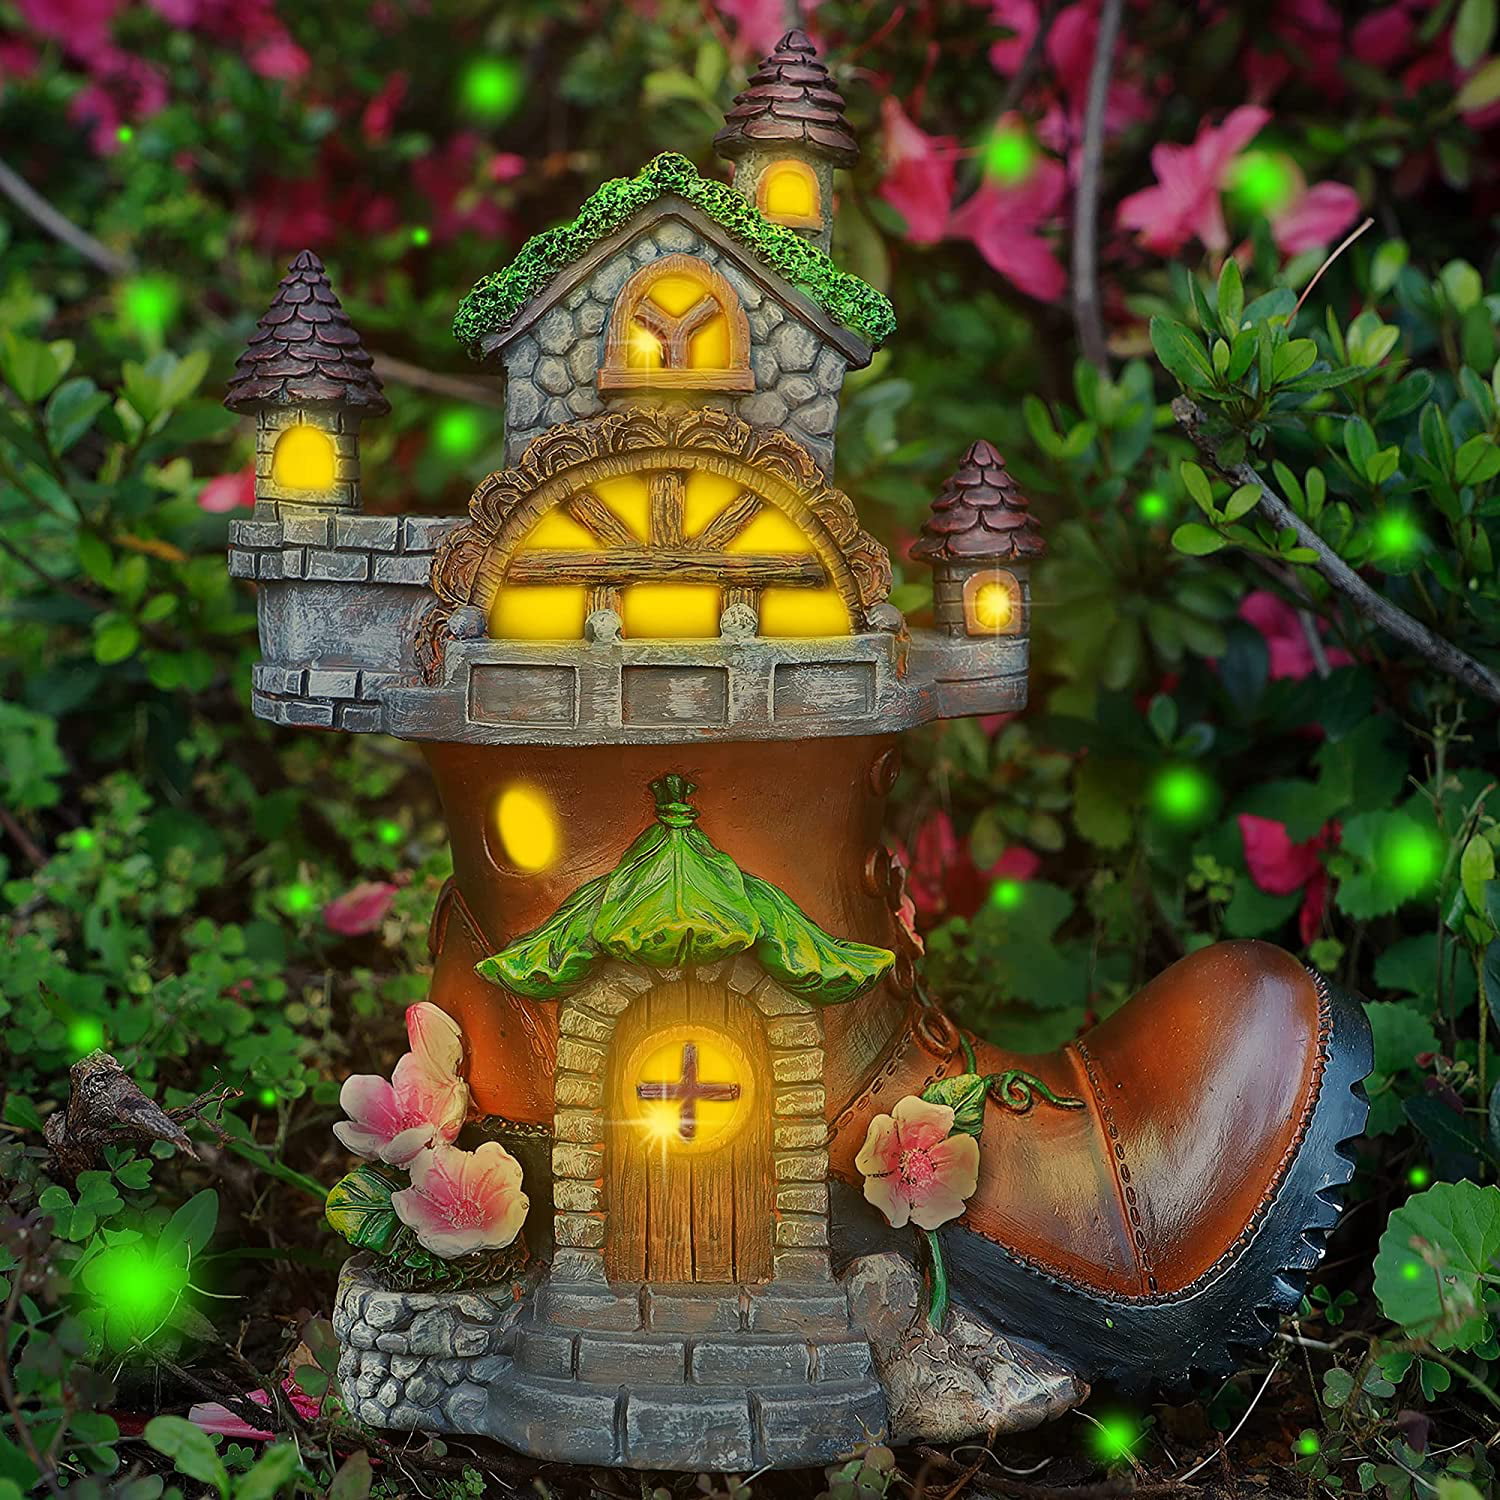 Magic Fairy Garden Tree House Decoration Metal Outdoor Garden Patio Ornament